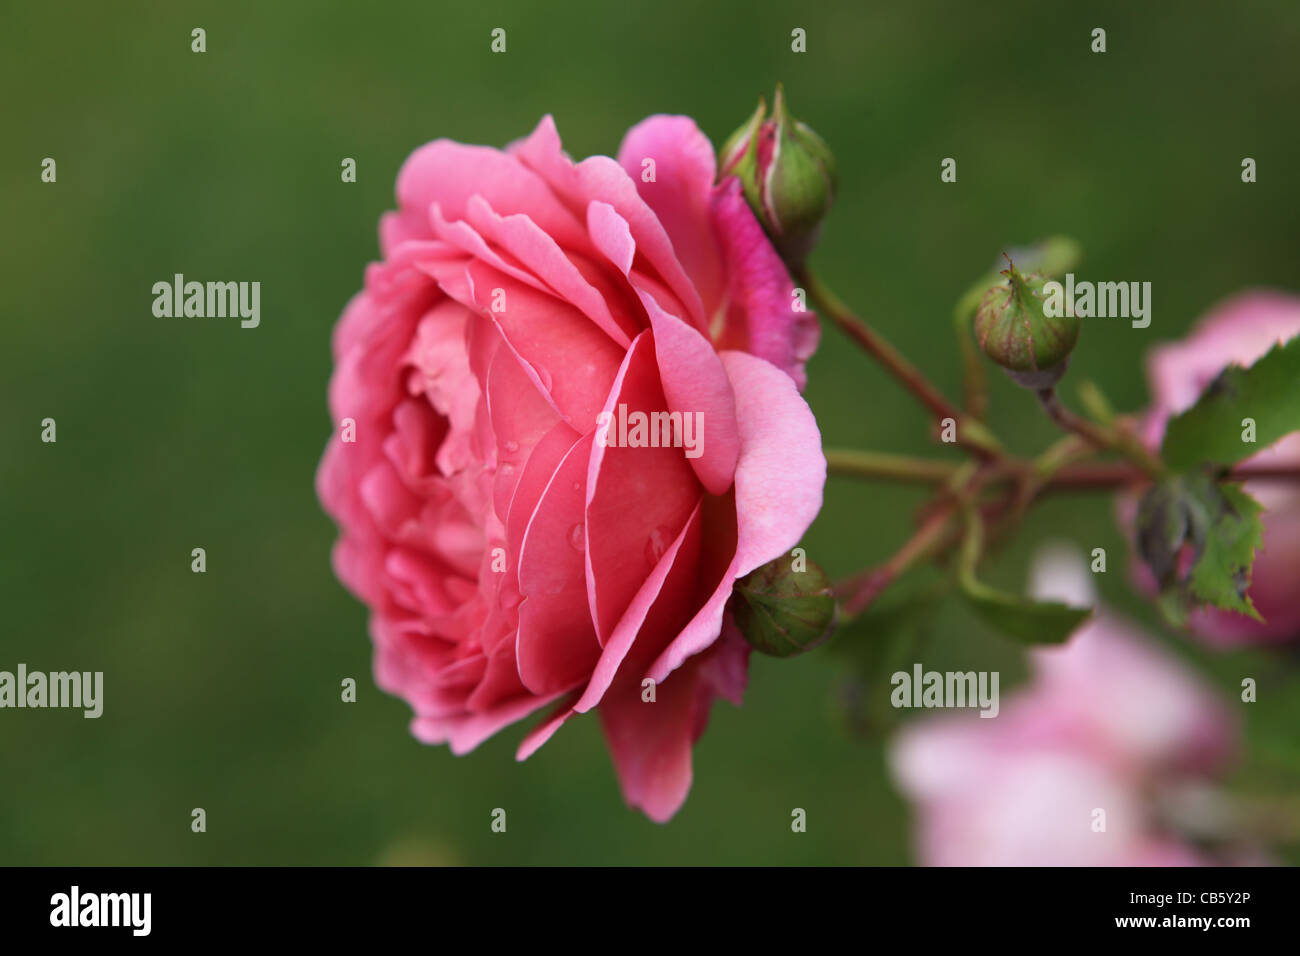 Rose Rosa Princess Alexandra Of Kent Beautiful Pink Flower Stock Photo Alamy